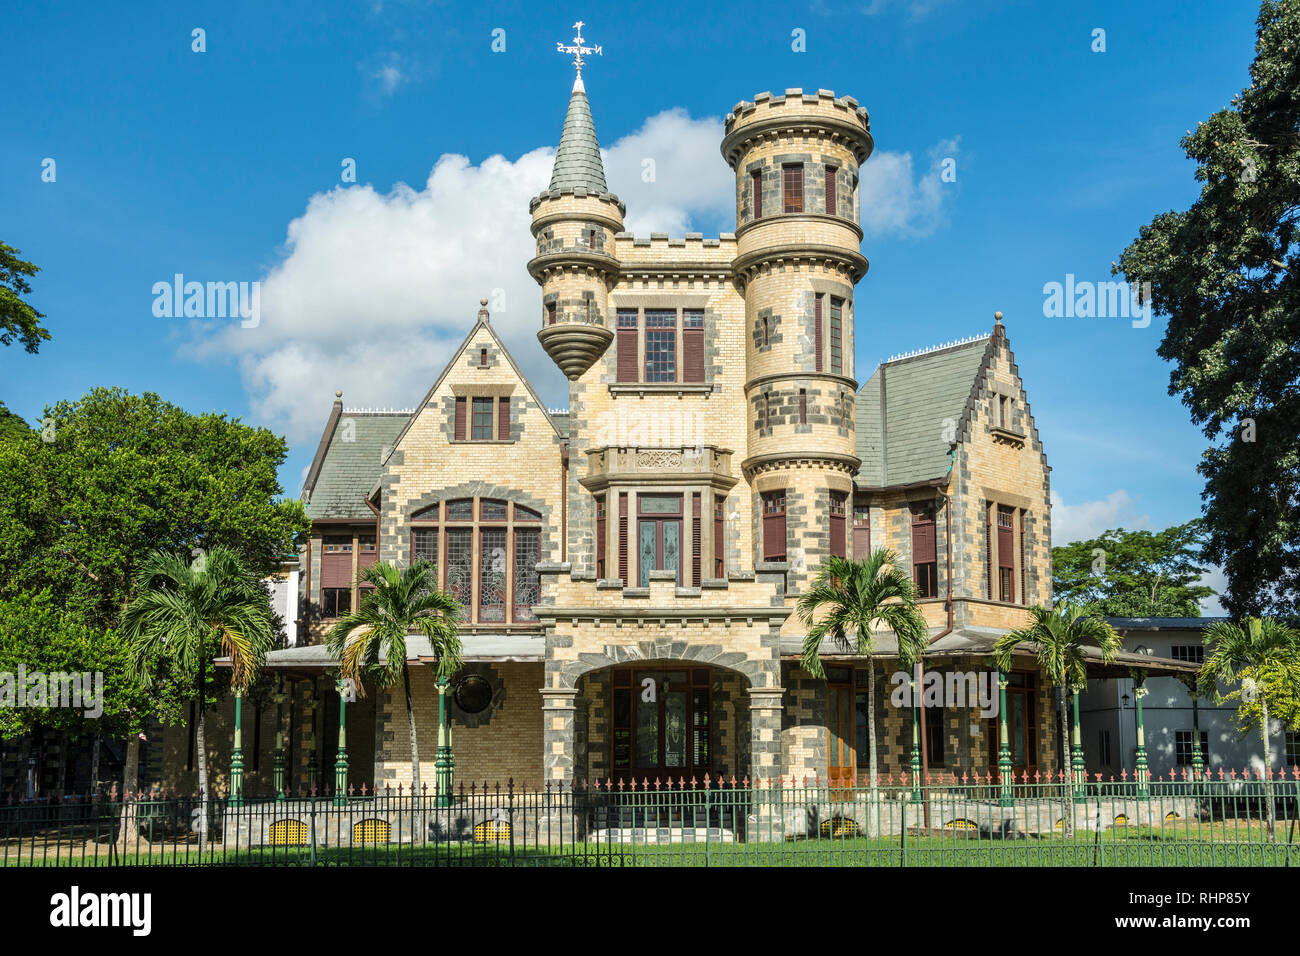 Stollmeyers Castello, una delle 'Magnificent sette' storiche case coloniali rivolta verso il Queens Park Savannah nel porto di Spagna, Trinidad & Tobago Foto Stock